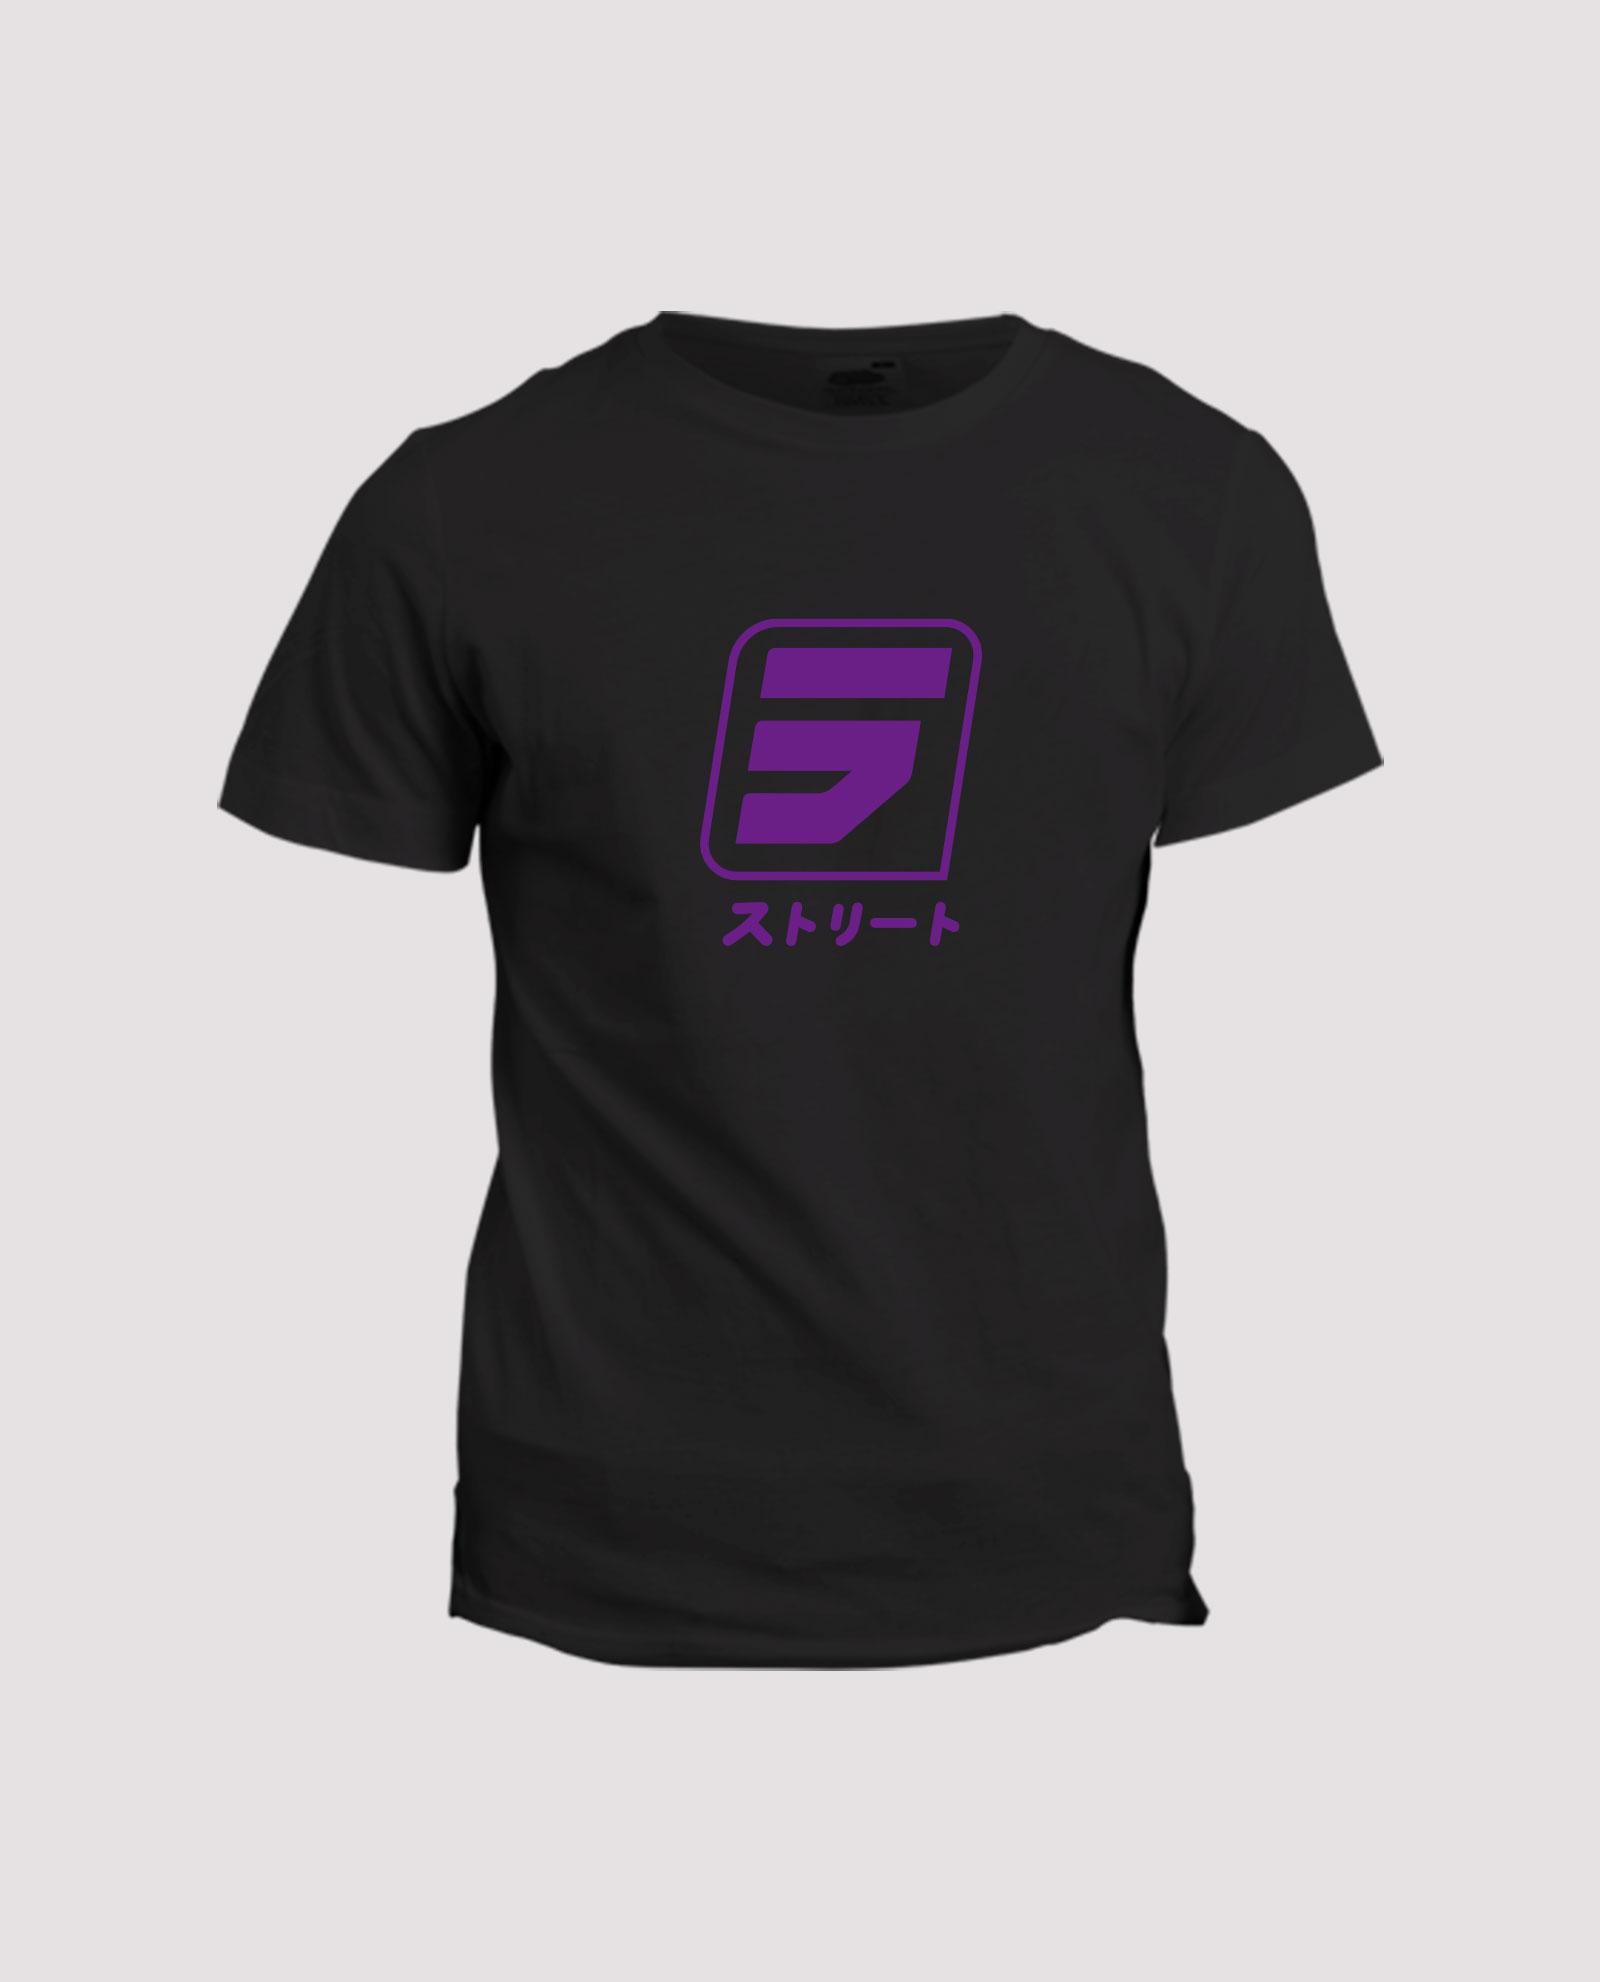 la-ligne-shop-t-shirt-noir-visuel-violet-shibu-S-mansour-barnaoui-mma-sport